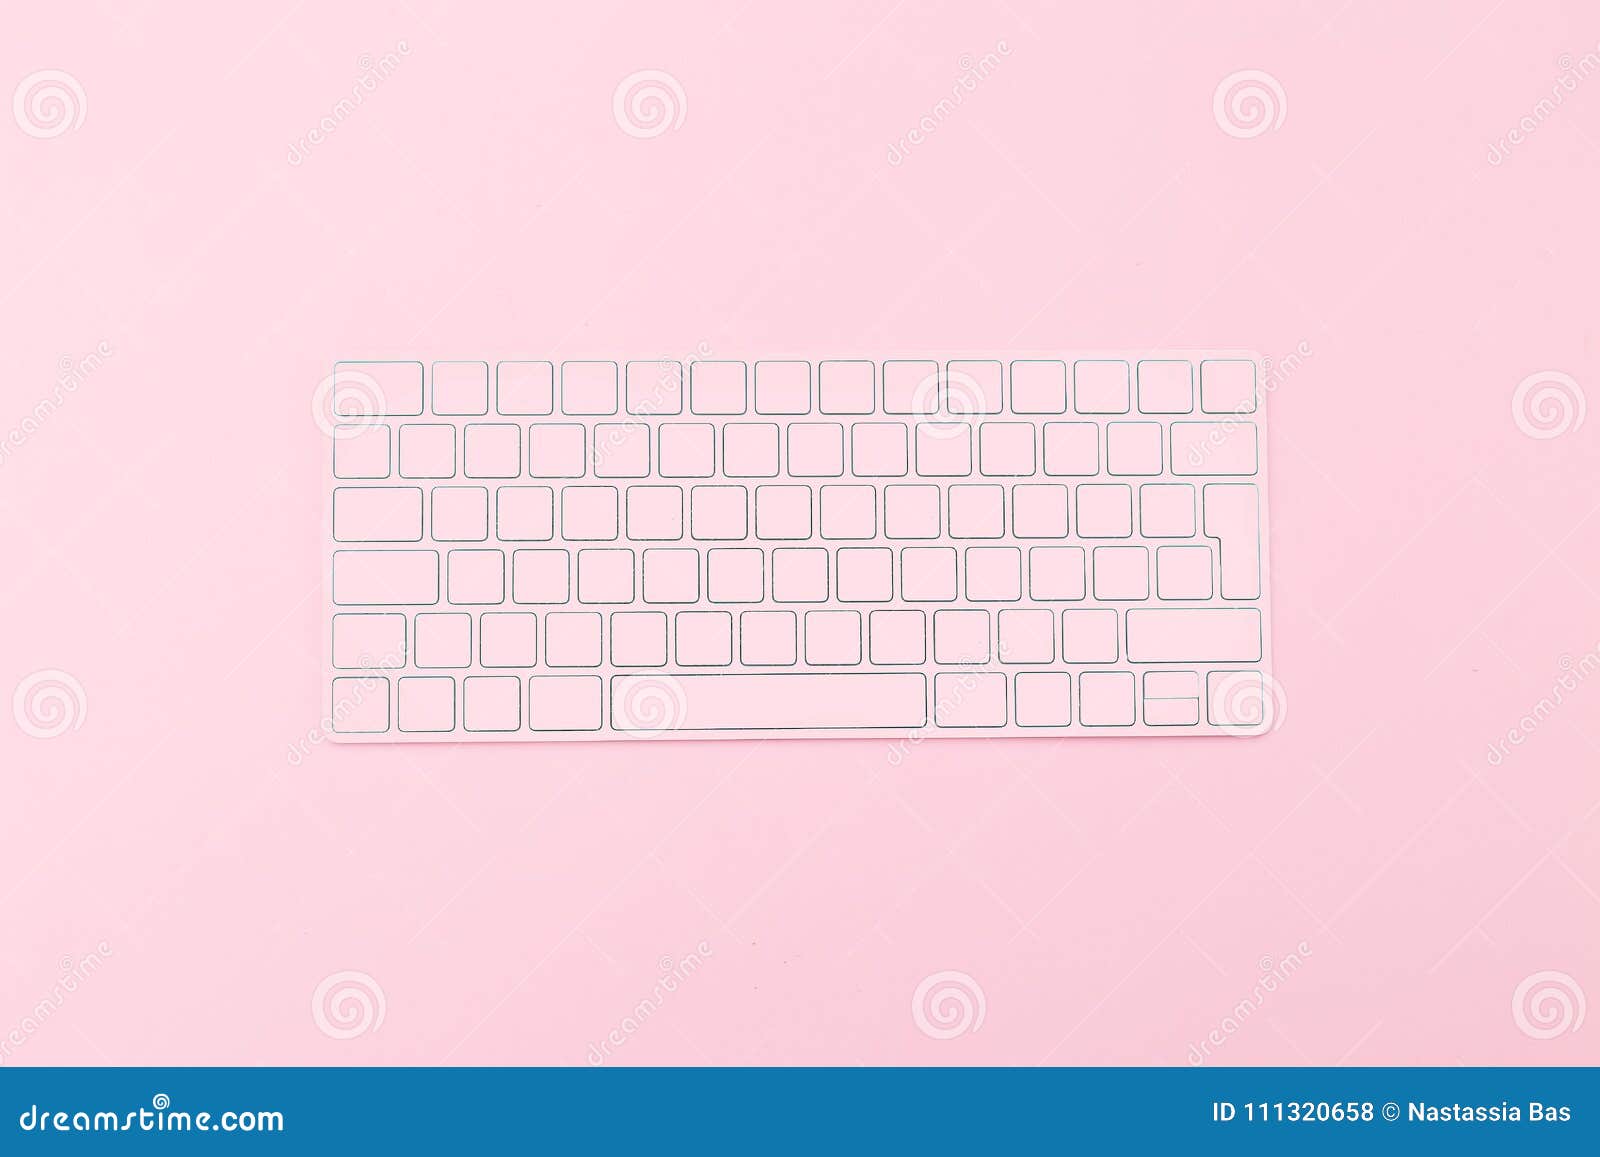 Một chiếc bàn phím màu hồng sẽ khiến bàn làm việc thêm phần đáng yêu và nữ tính. Với thiết kế đơn giản nhưng tinh tế, chiếc bàn phím màu hồng sẽ phù hợp với nhiều không gian nội thất và sẽ là nguồn cảm hứng mãi mãi.